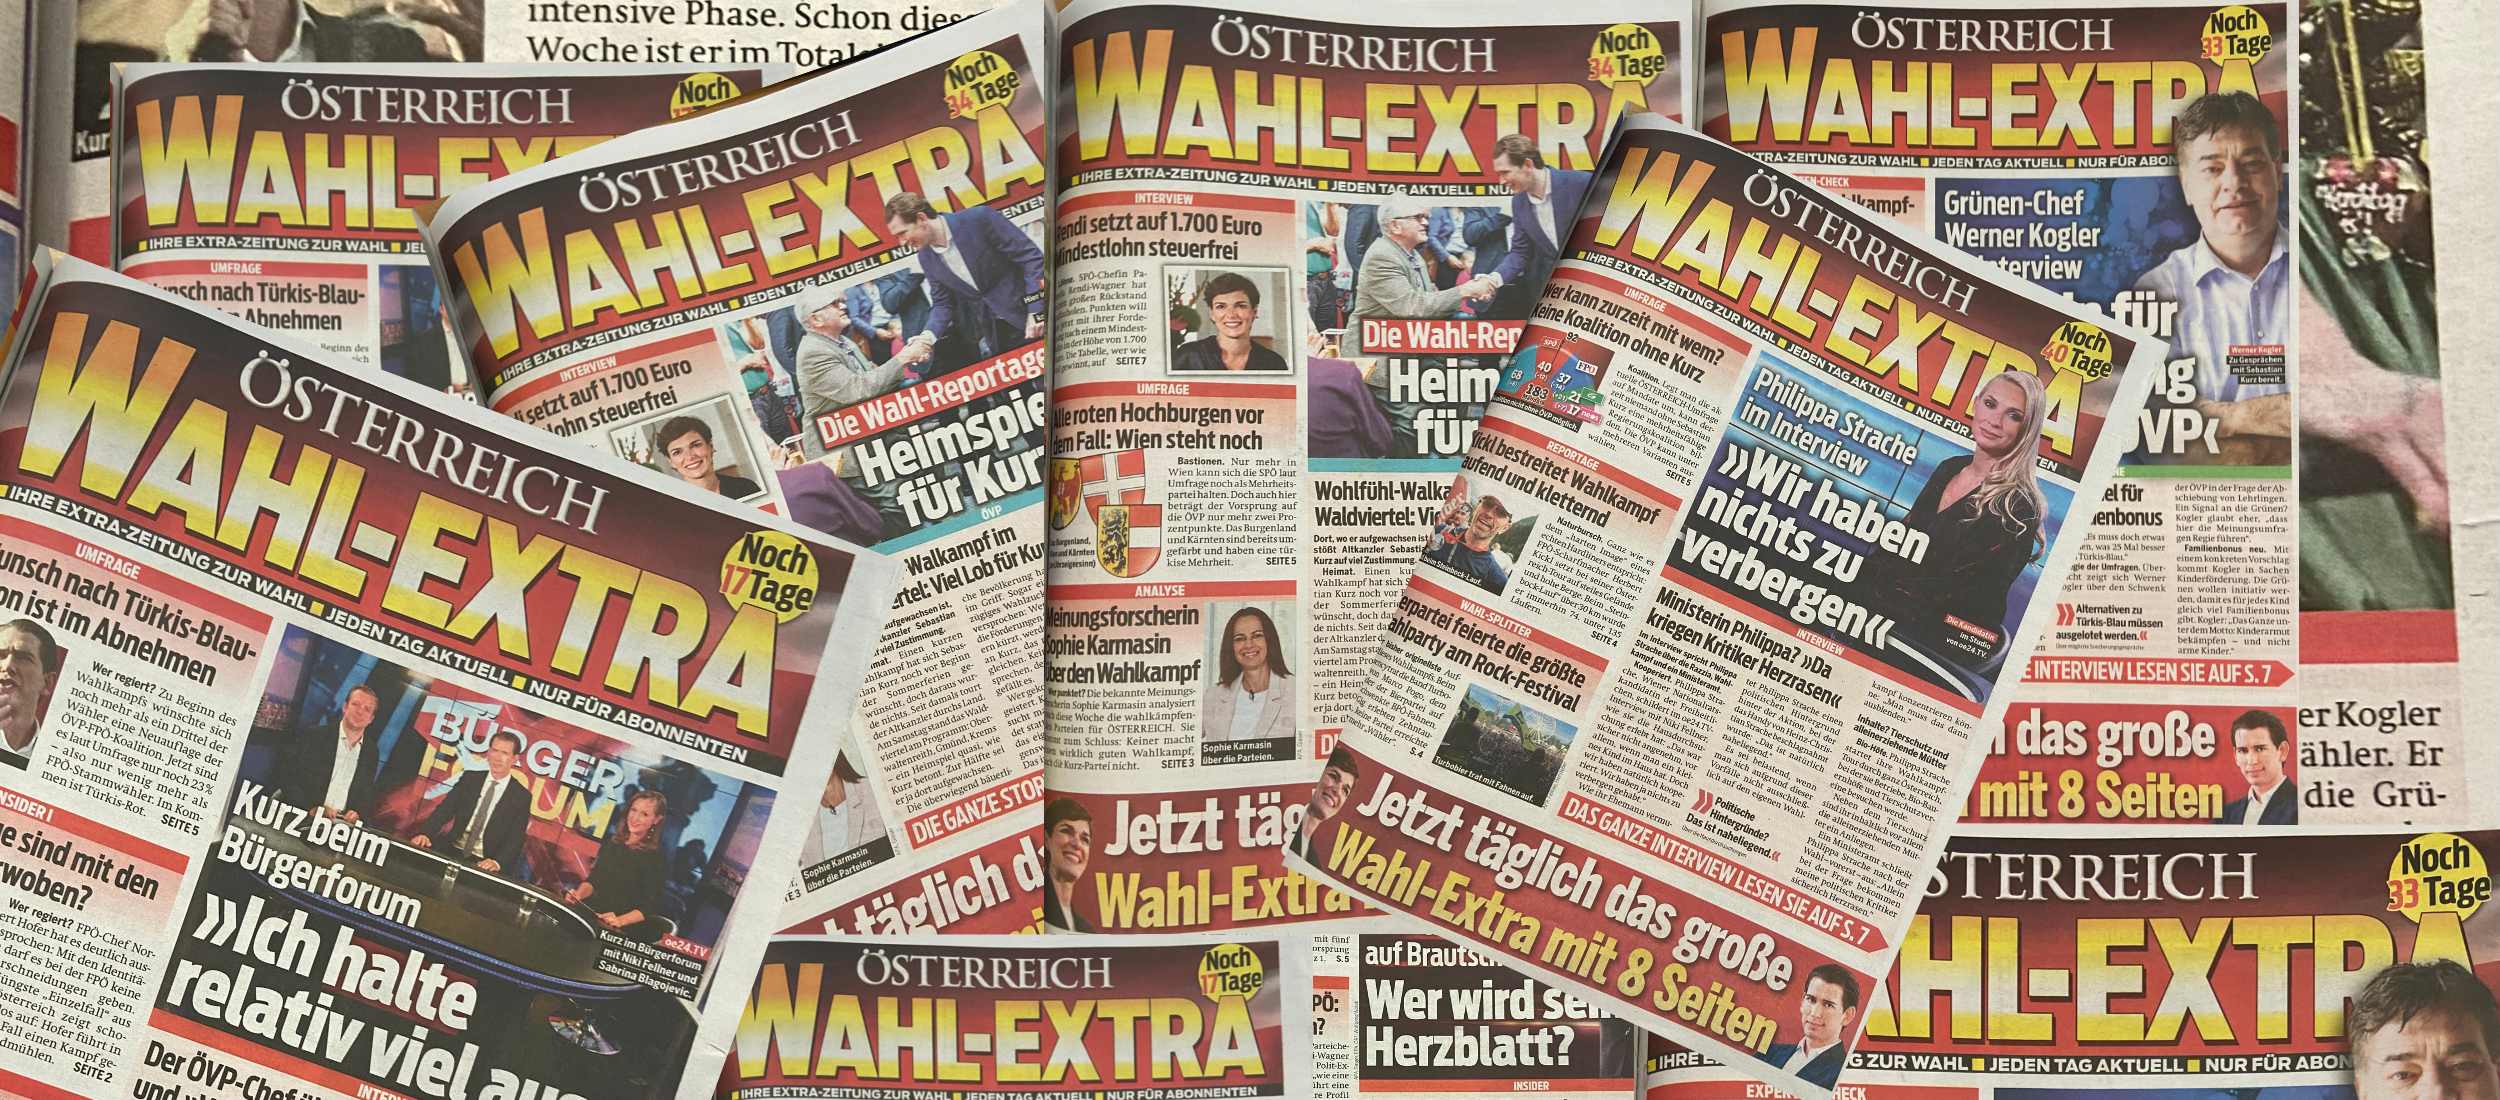 Kollage aus Covern des Wahl-Extras der Tageszeitung „Österreich“